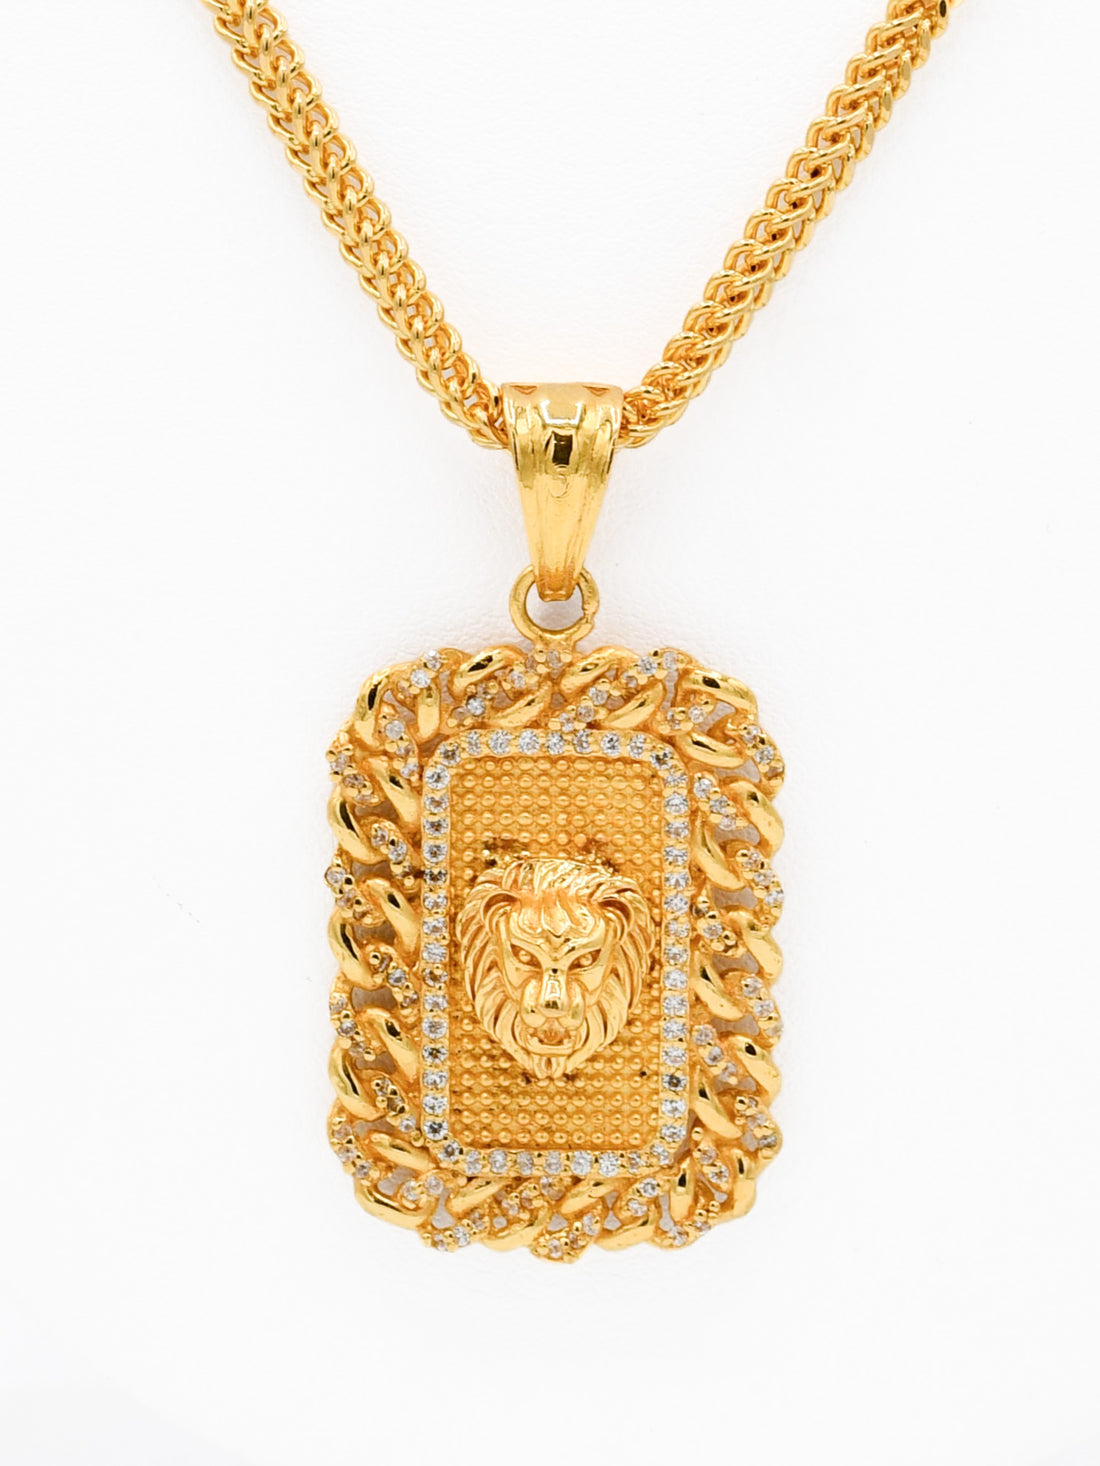 22ct Gold CZ Lion Head Pendant